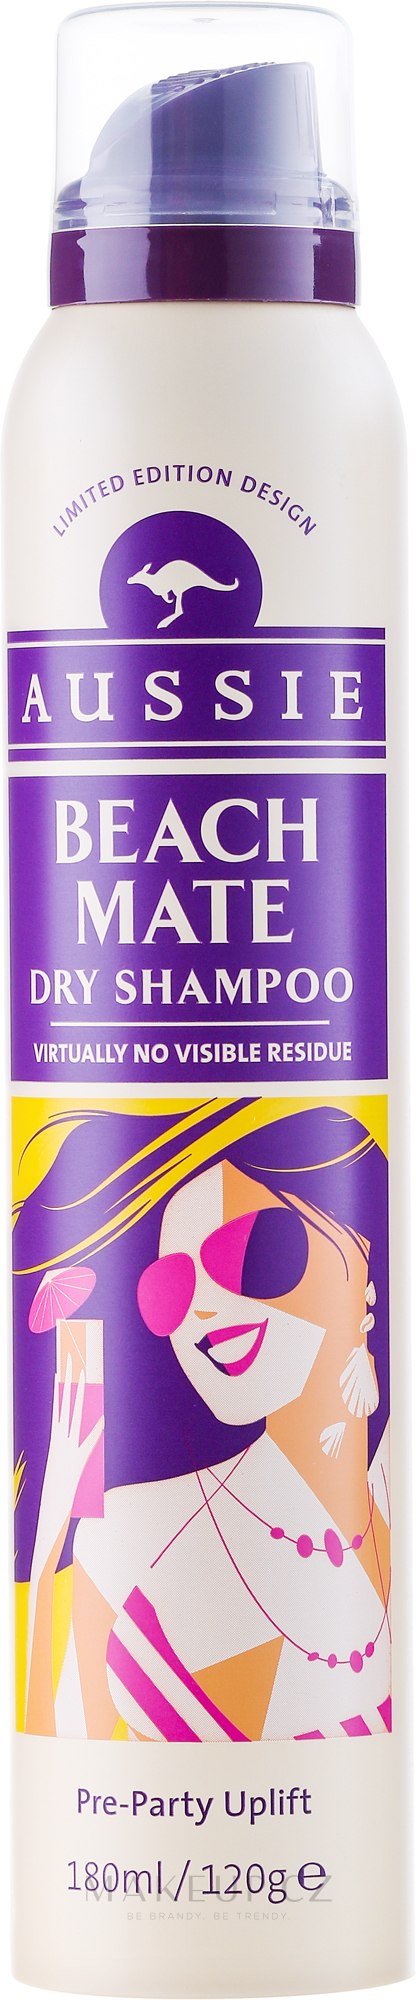 aussie suchy szampon beach mate